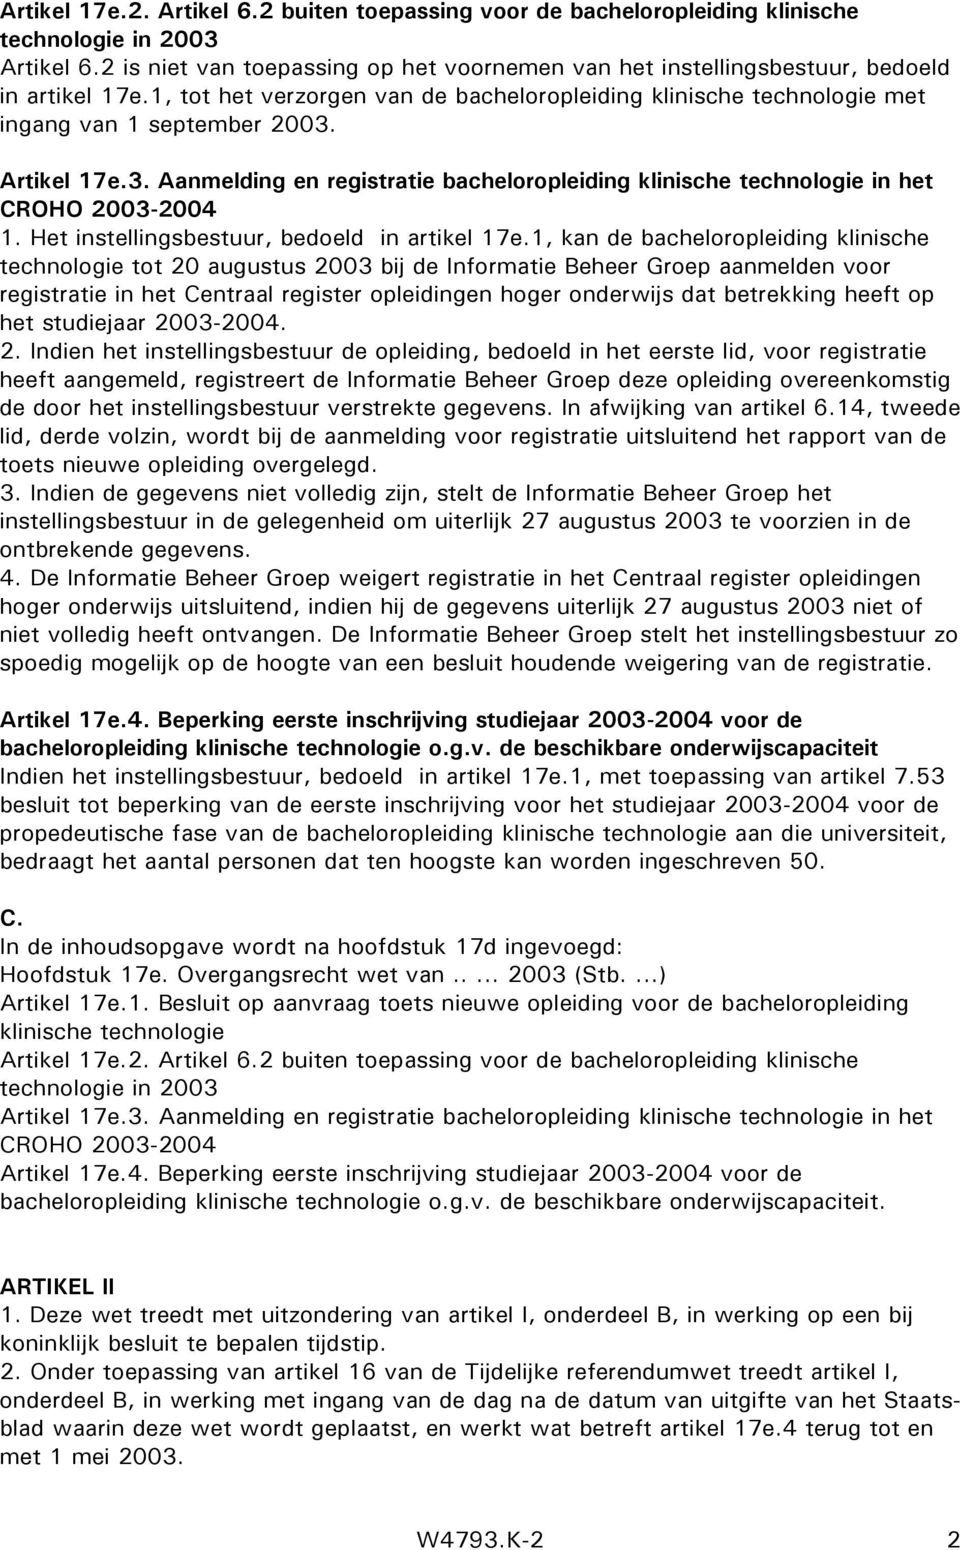 Artikel 17e.3. Aanmelding en registratie bacheloropleiding klinische technologie in het CROHO 2003-2004 1. Het instellingsbestuur, bedoeld in artikel 17e.